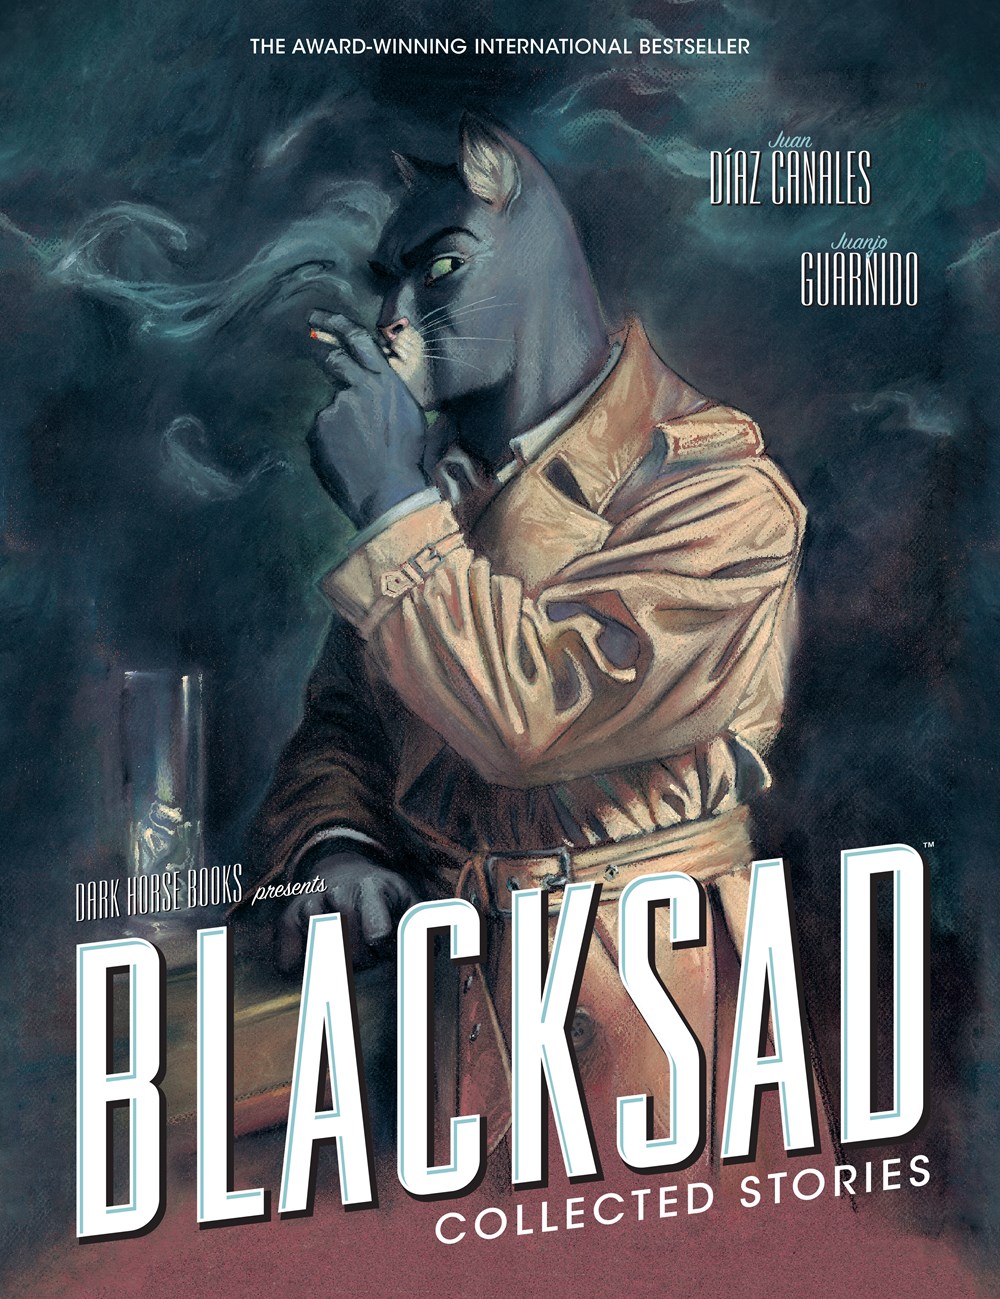 Image for "Blacksad"